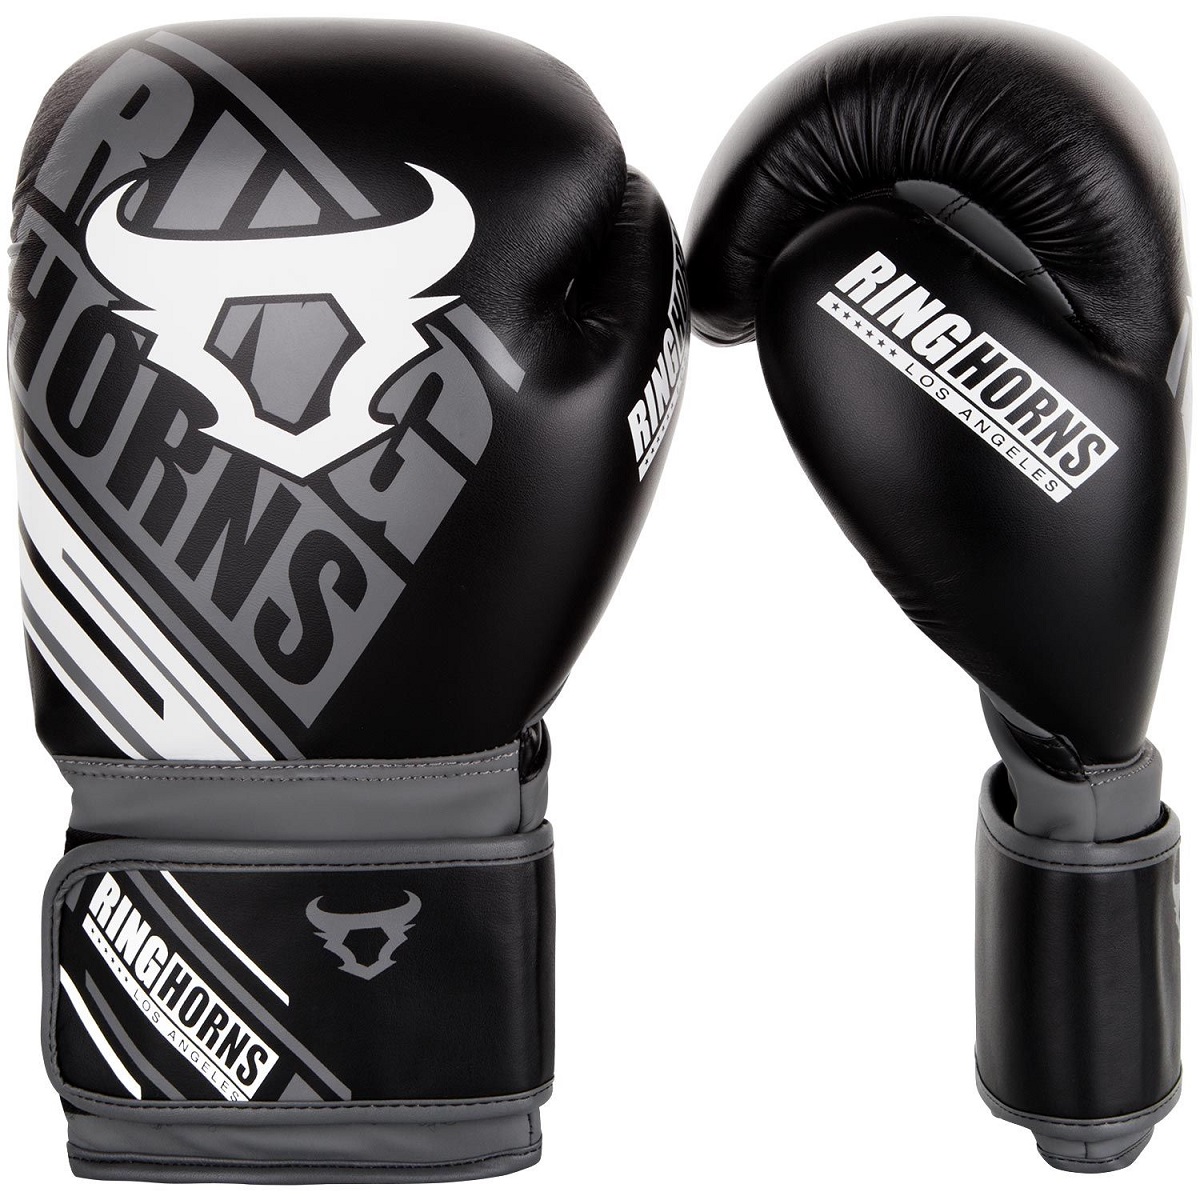 楽天市場 Ringhorns ボクシンググローブ Nitro Boxing Gloves ブラック リングホーン スパーリンググローブ ボクシング キックボクシング 格闘技 送料無料 武道格闘技ショップm World